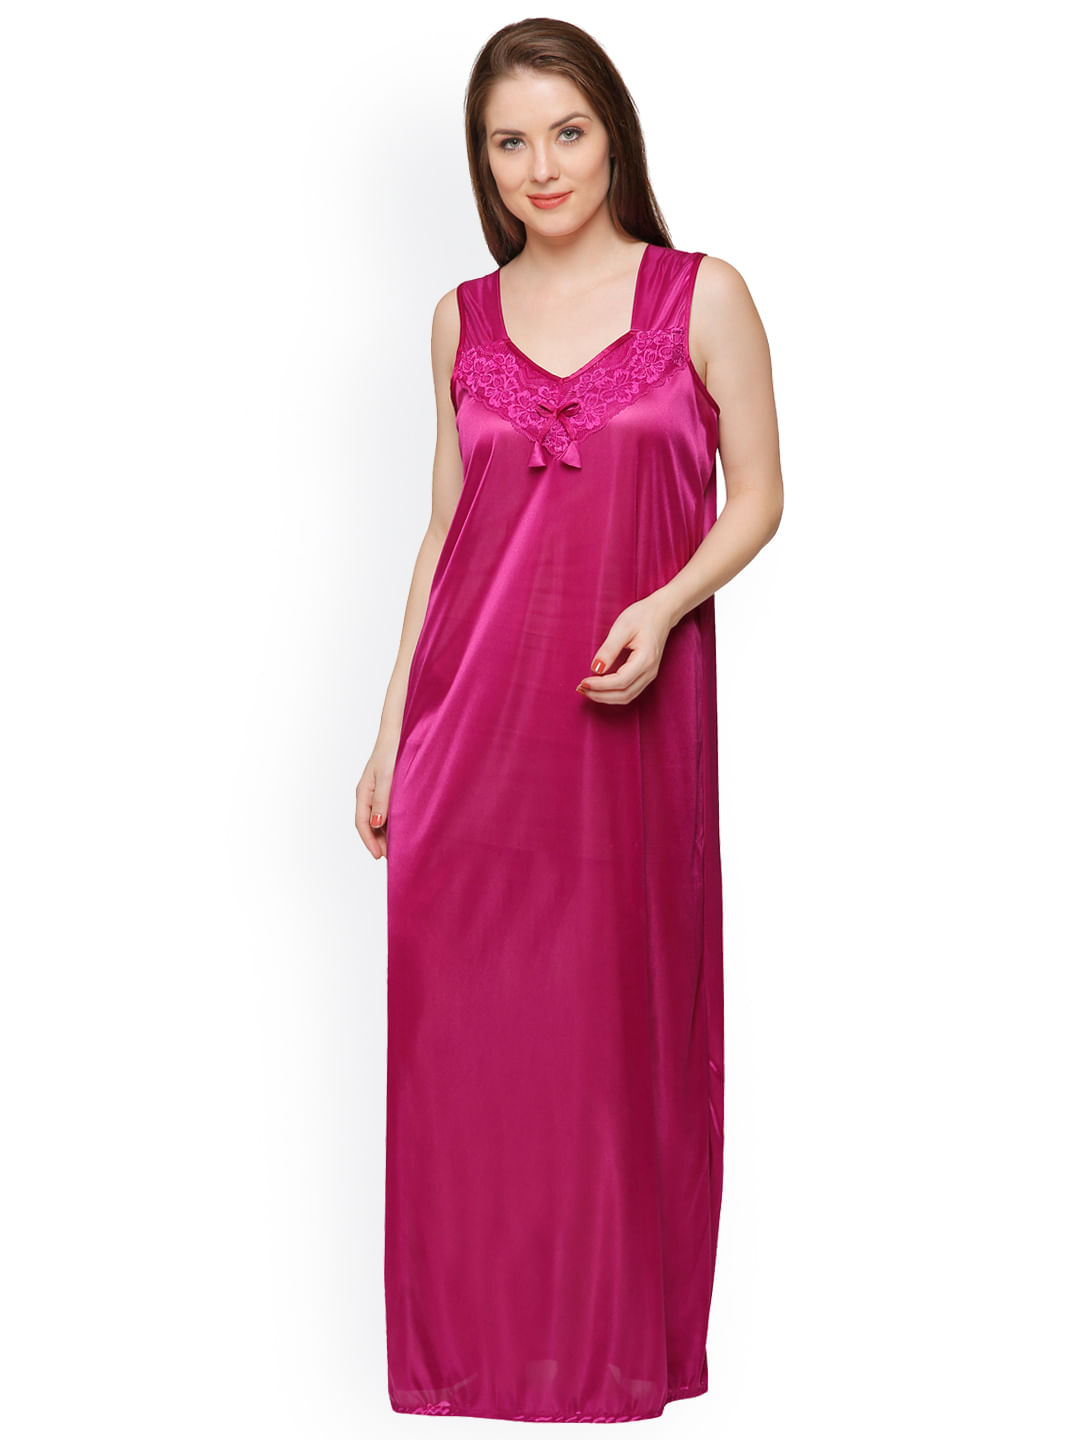 Women Nightwear & Lingerie: Shop High Quality Nightwear - Order Online in  Pakistan | Naheed.pk